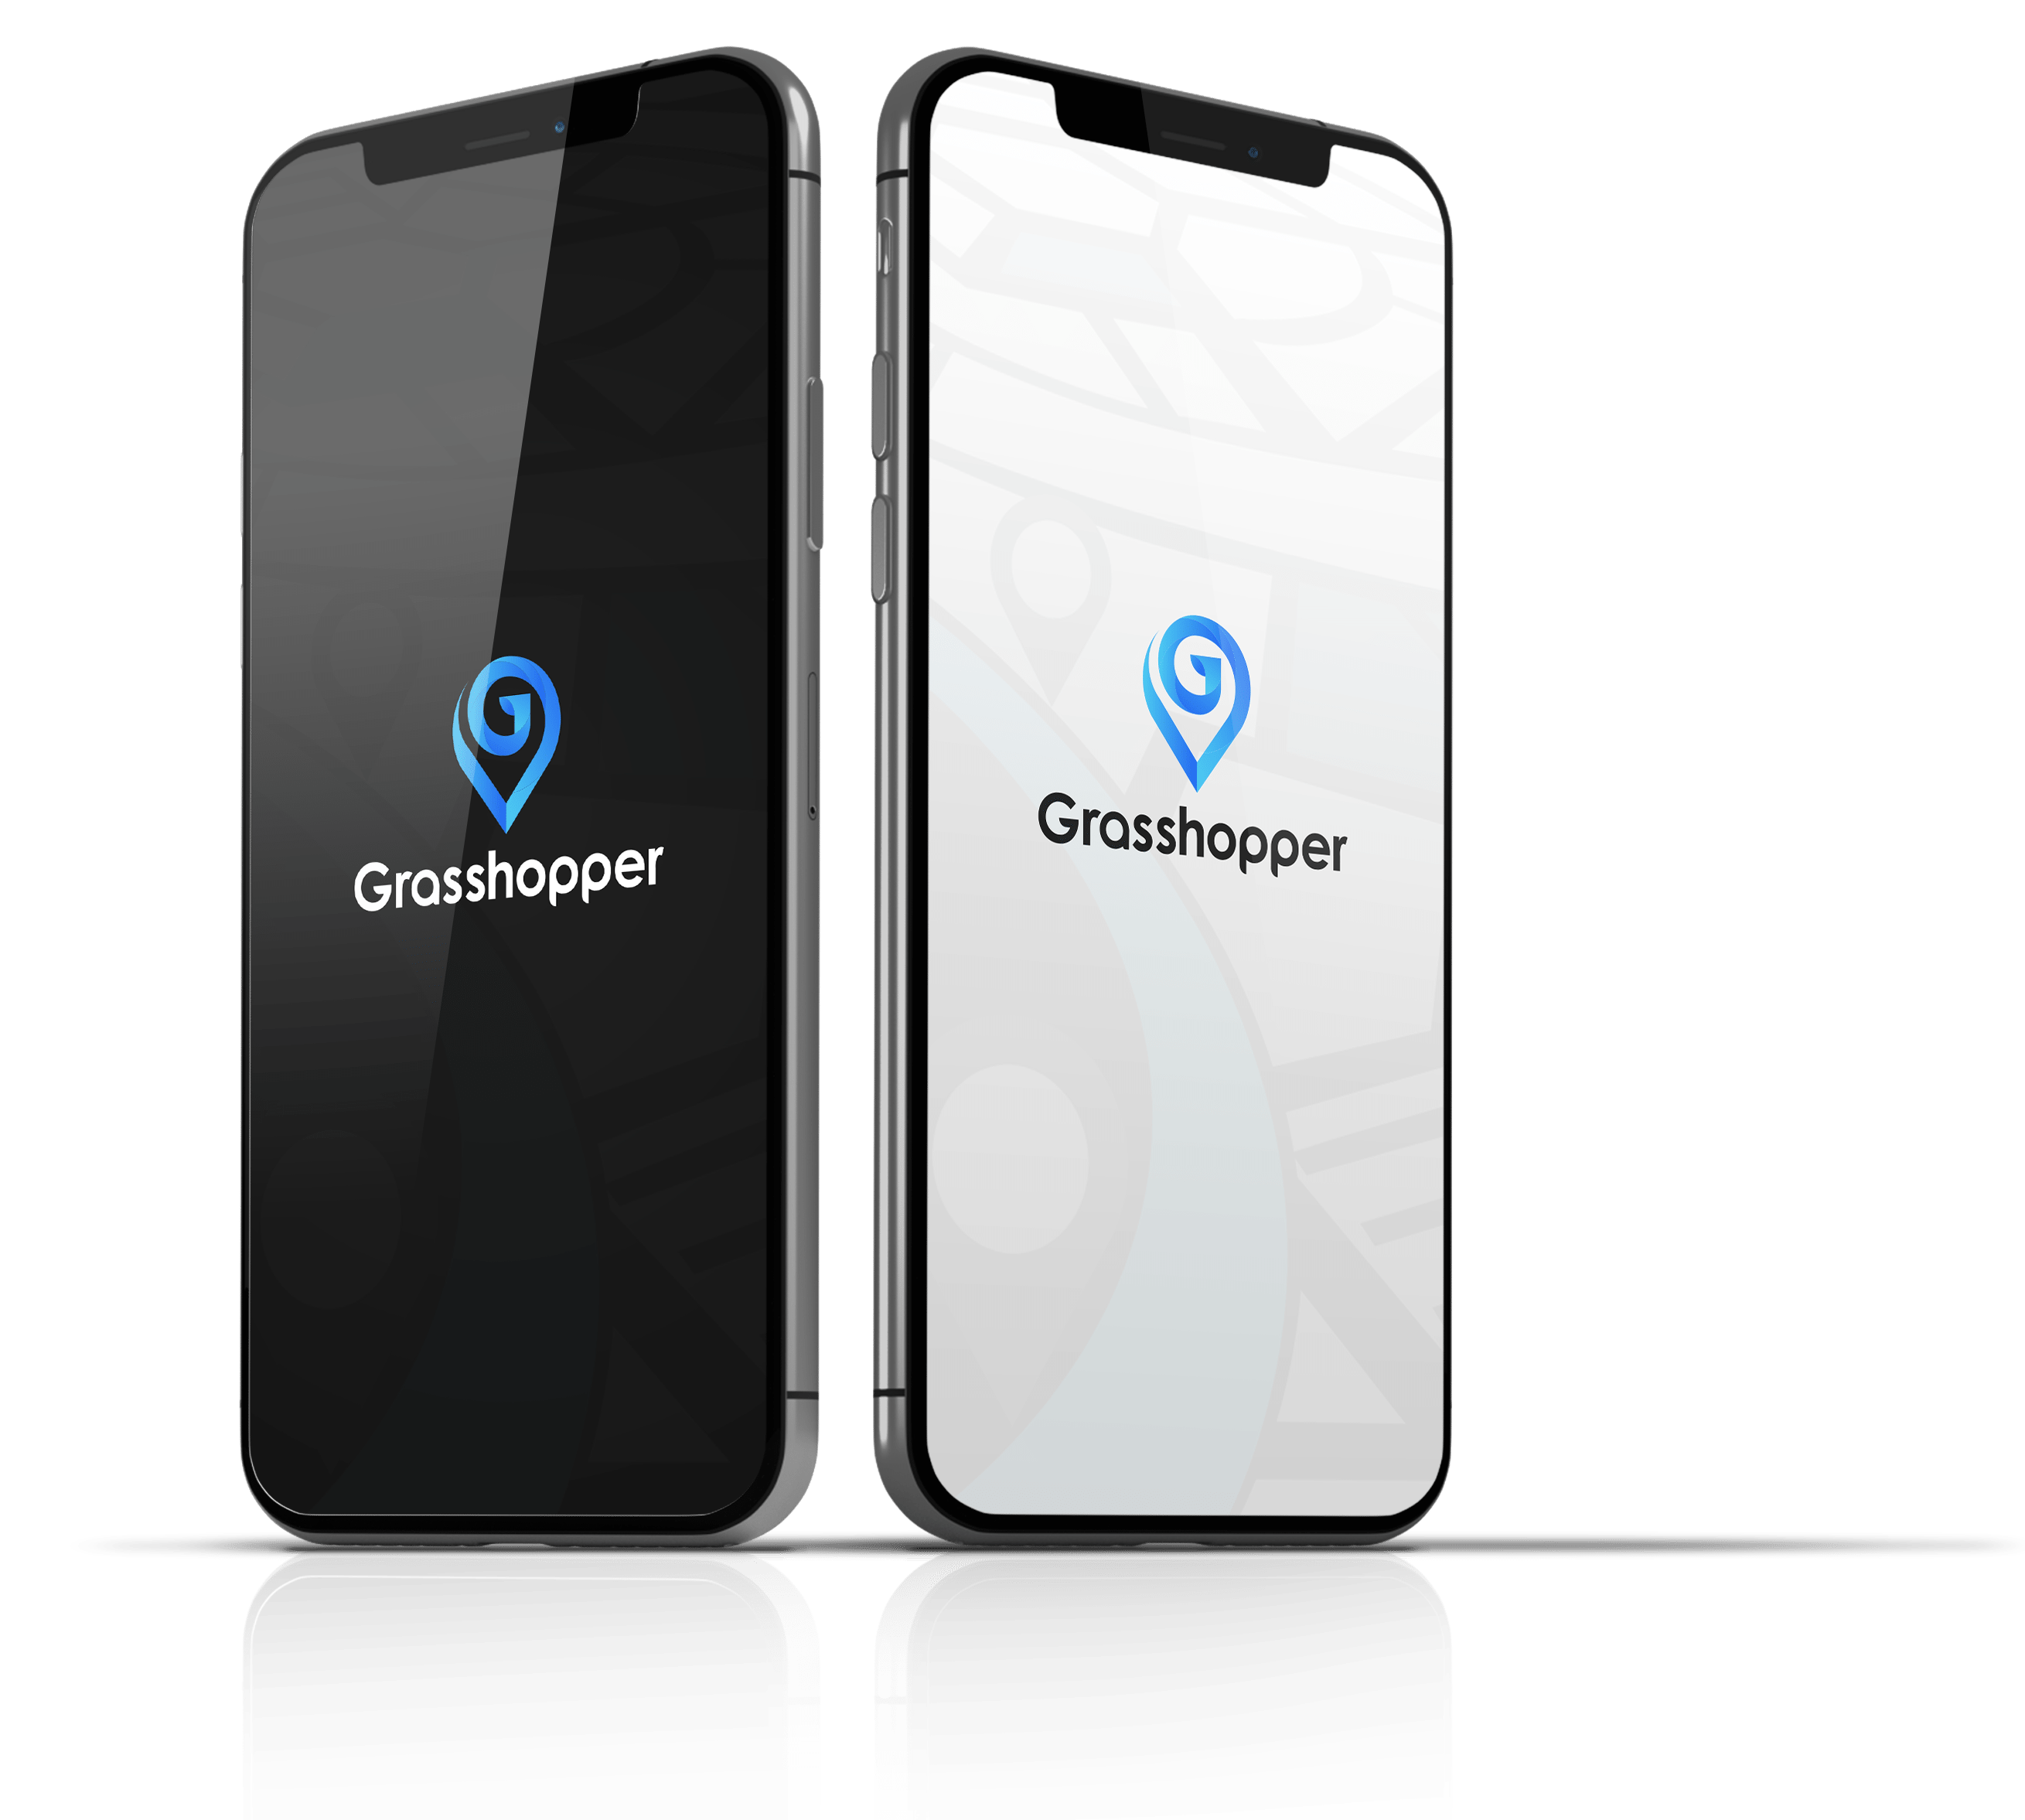 Mobile Apps - Grasshopper